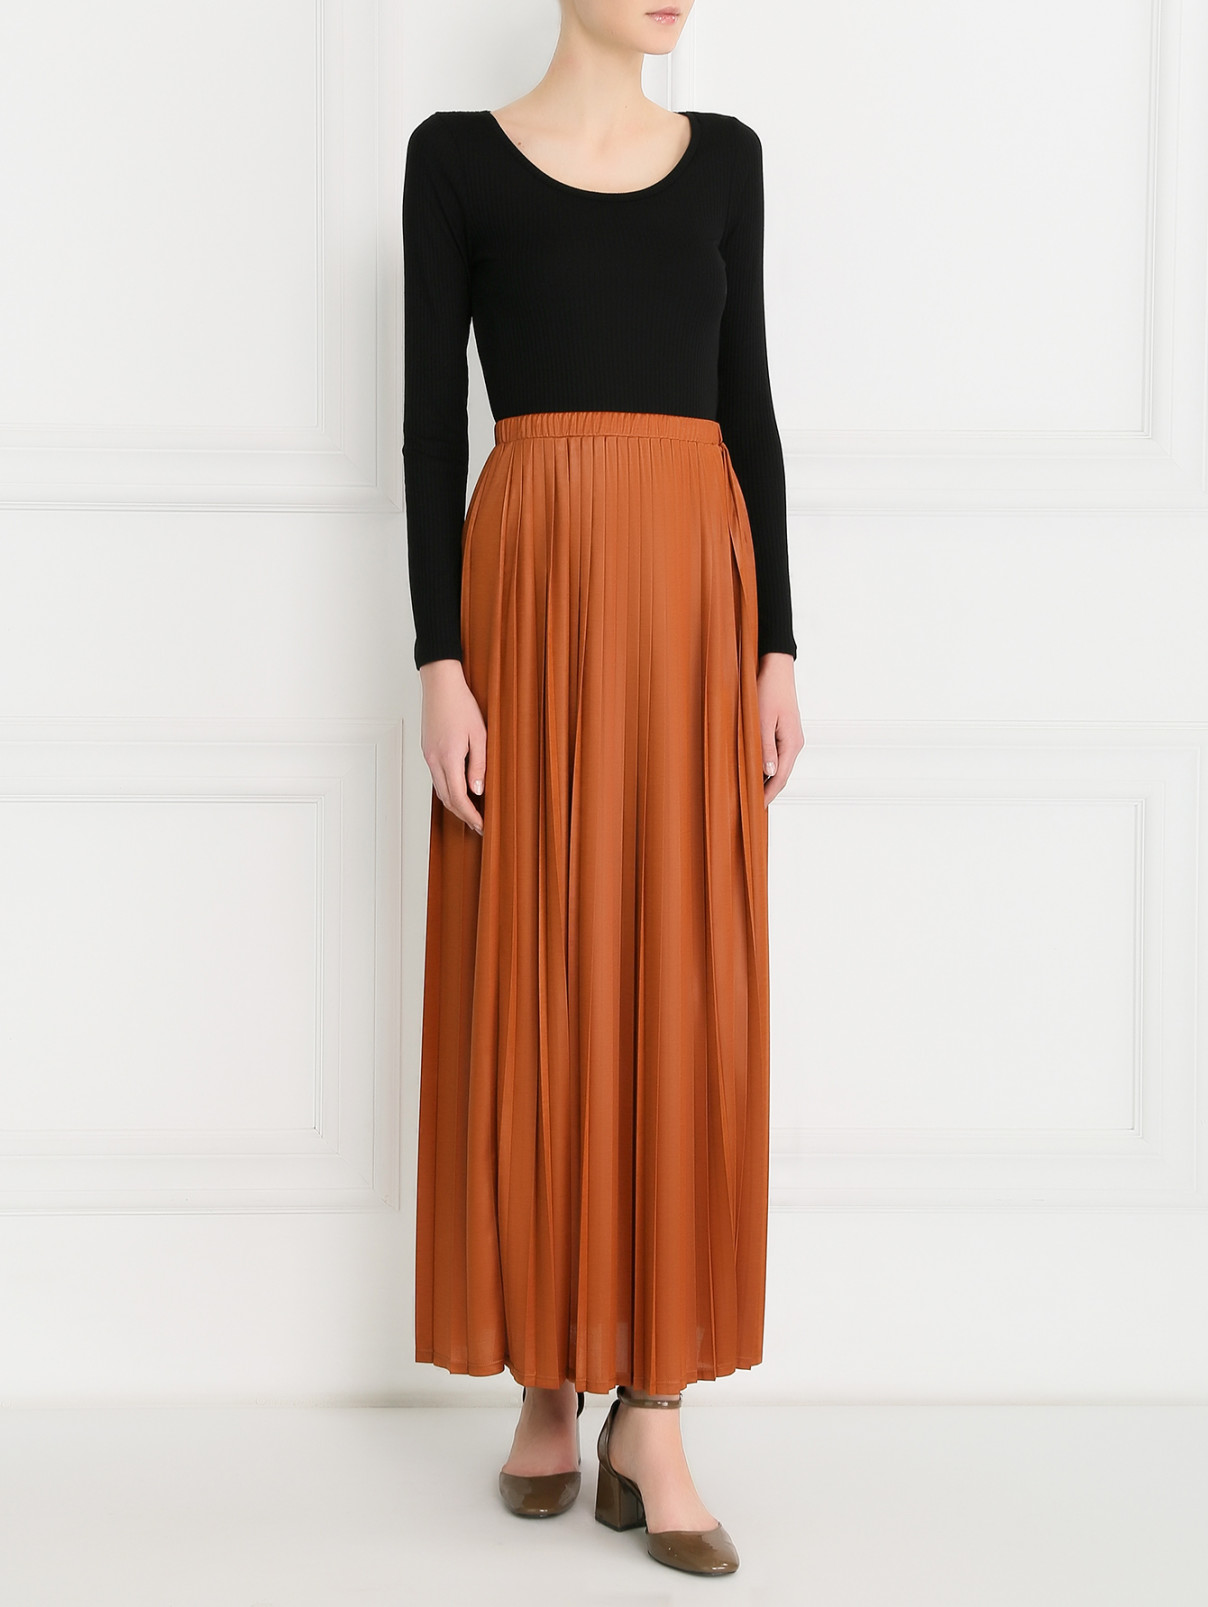 Плиссированная юбка-миди на резинке Max Mara  –  Модель Общий вид  – Цвет:  Оранжевый